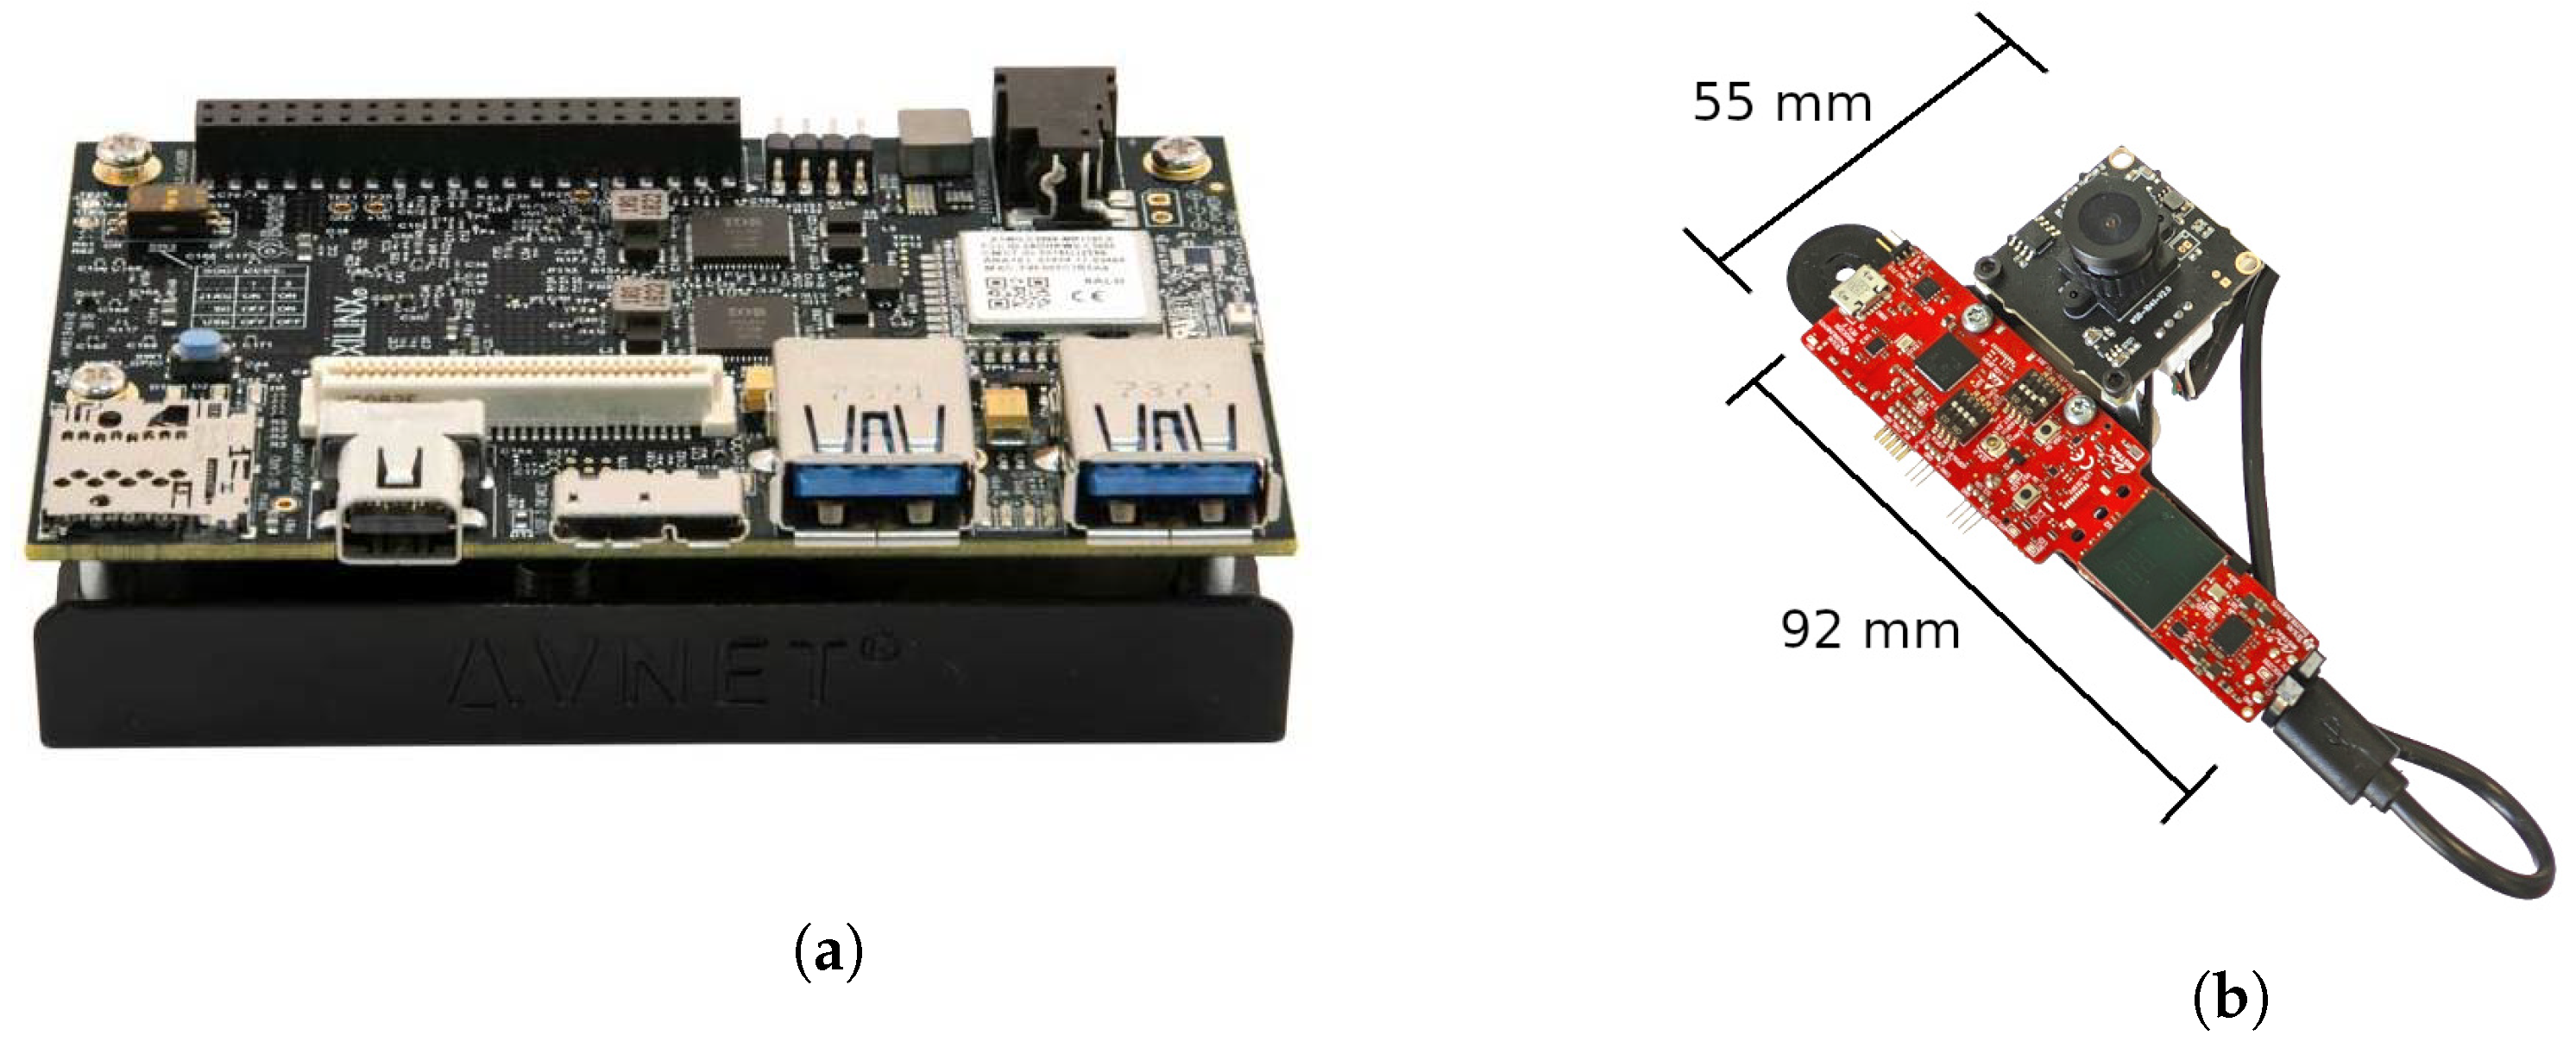 即日出荷 Avnet ULTRA96-V2 FPGA評価ボード Zynq開発ボードセット FPGA